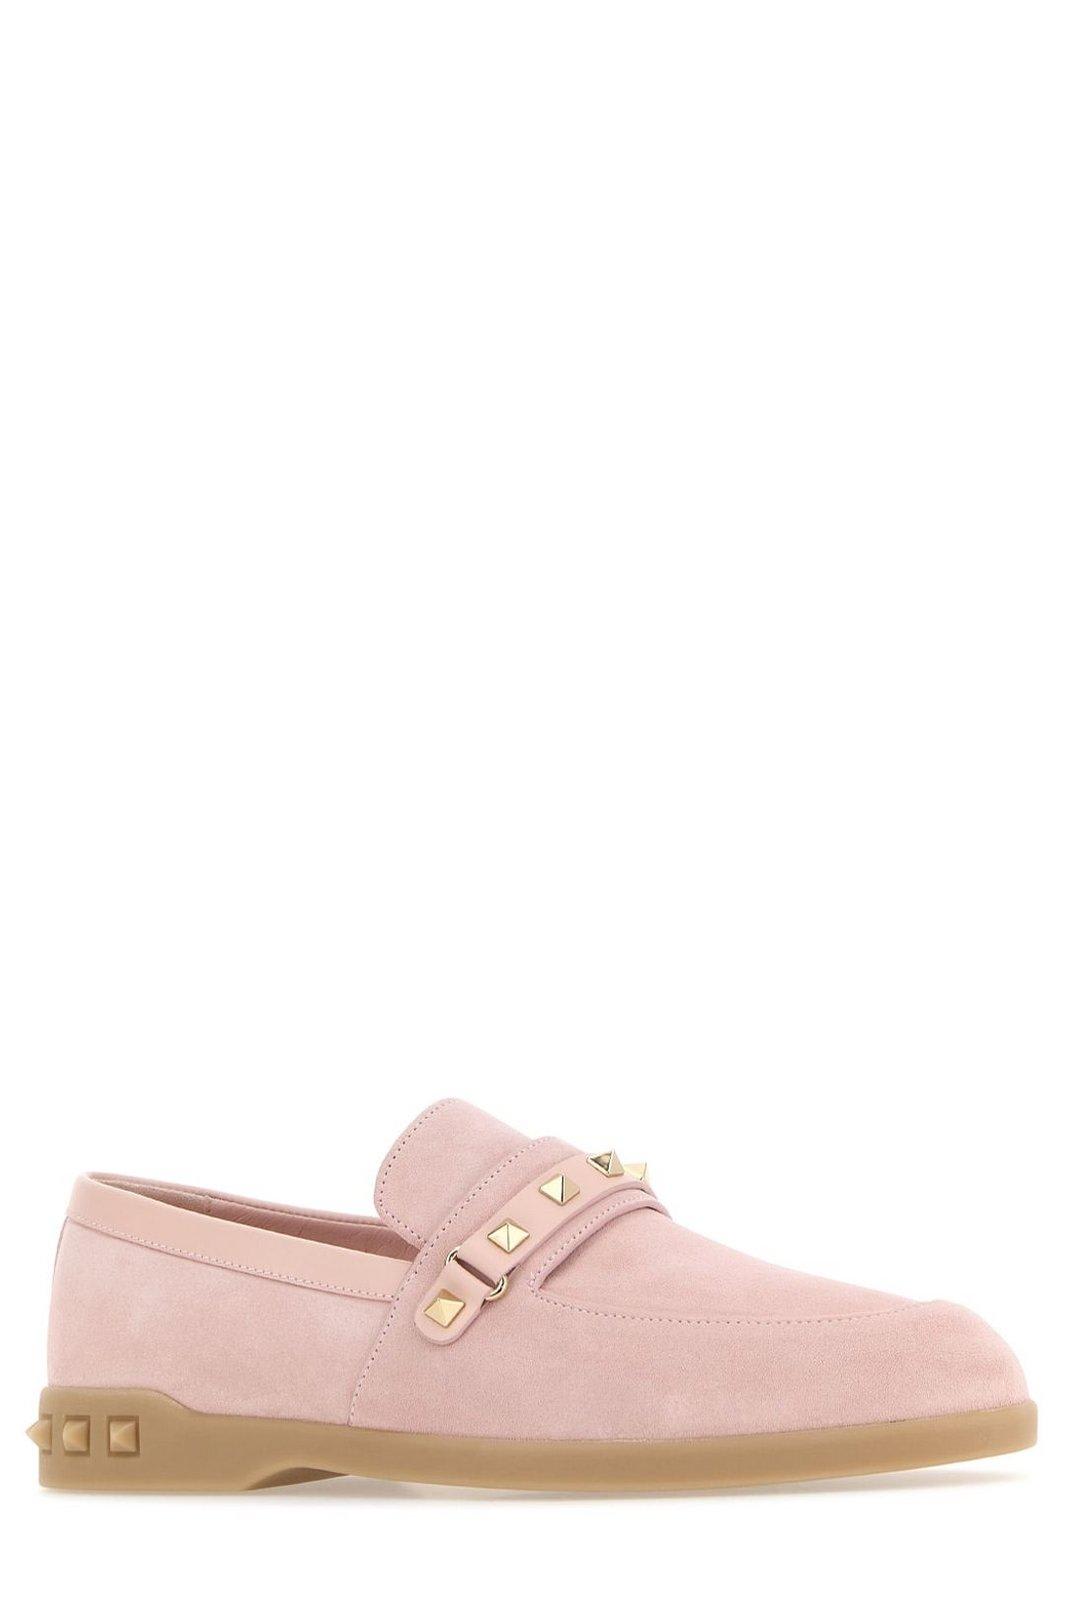 Shop Valentino Garavani Leisure Flows Slip-on Loafers In Pink